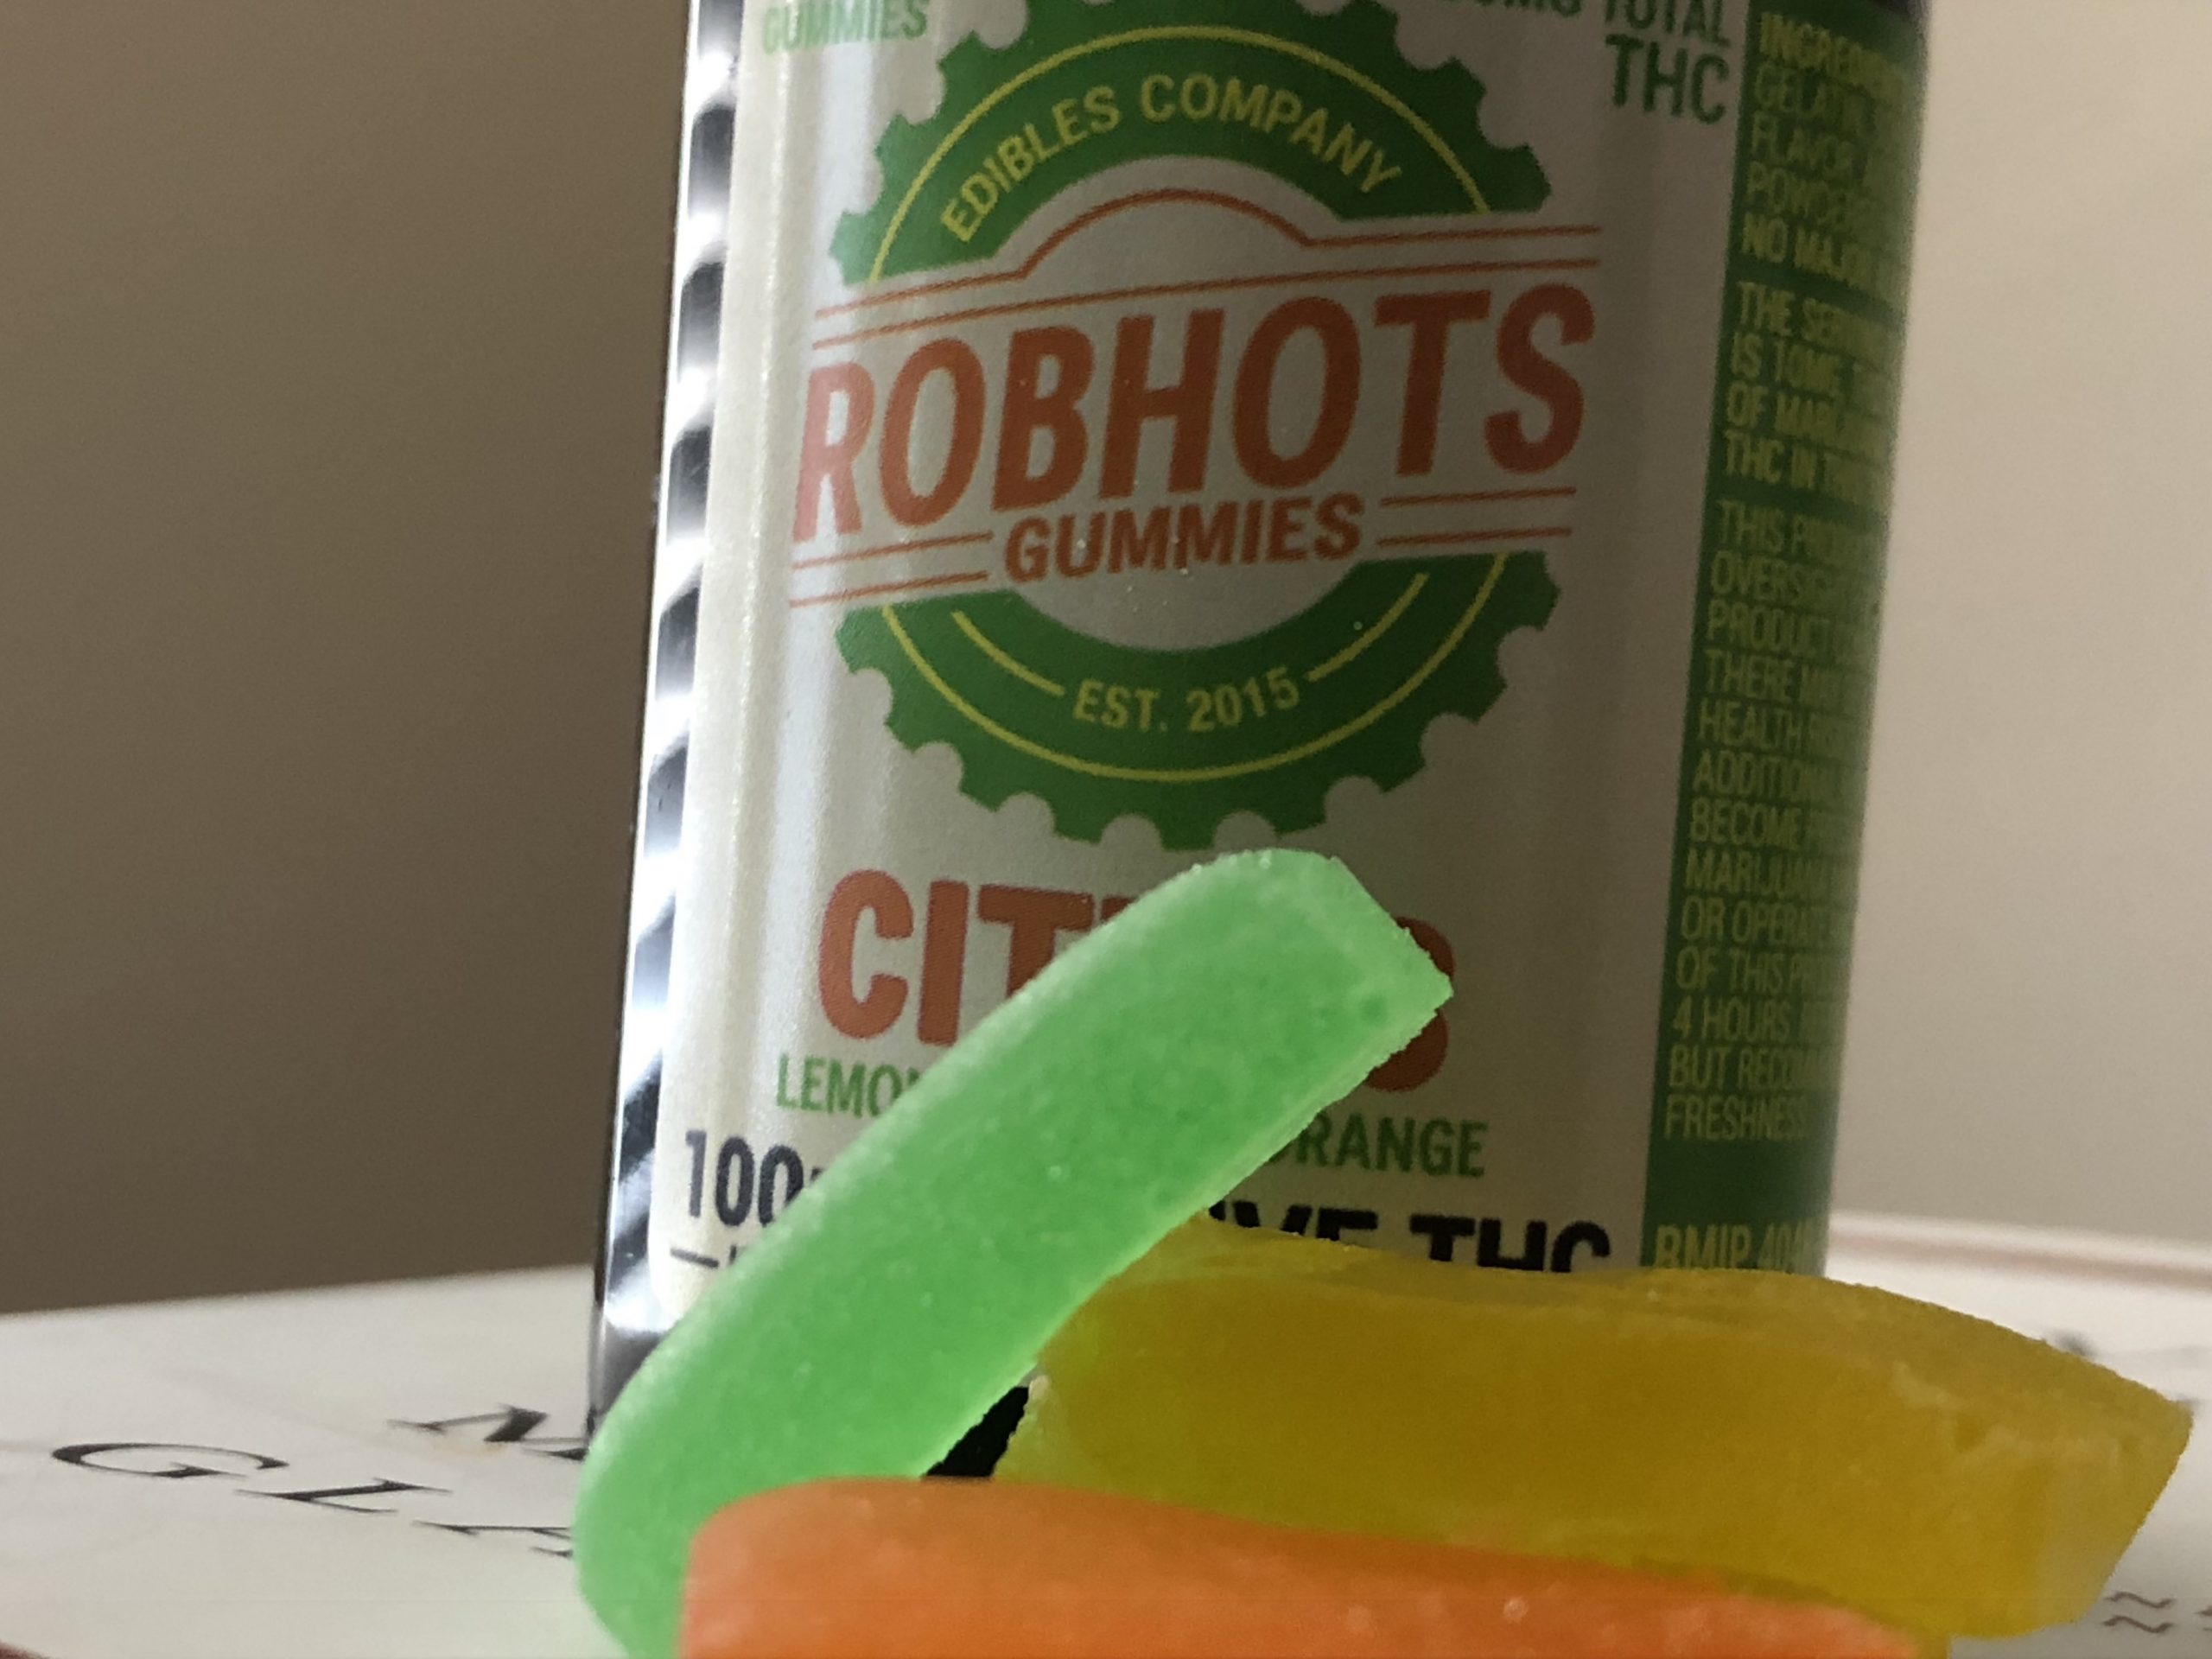 robhots gummies edibles photo